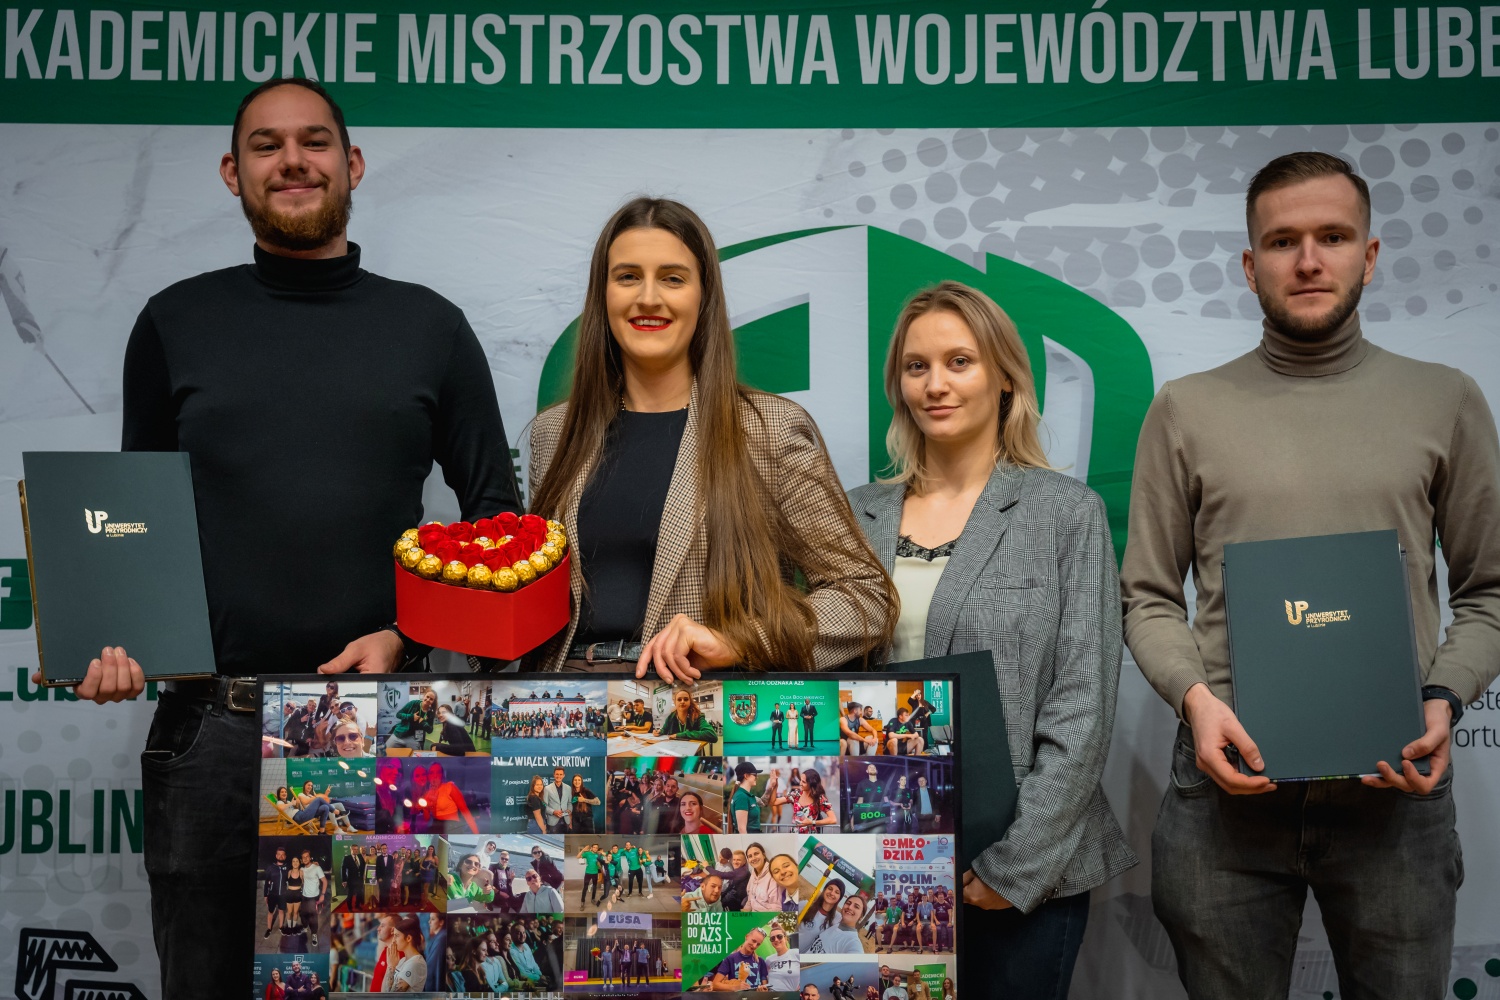 Mikołaj Wójcik (Członek Zarządu kadencji 2022-2024), Olga Bociankiewicz ( Prezes Zarzadu), Justyna Jamroziak (Sekretarz zarządu) i Marek Pietrus (Członek zarządu).